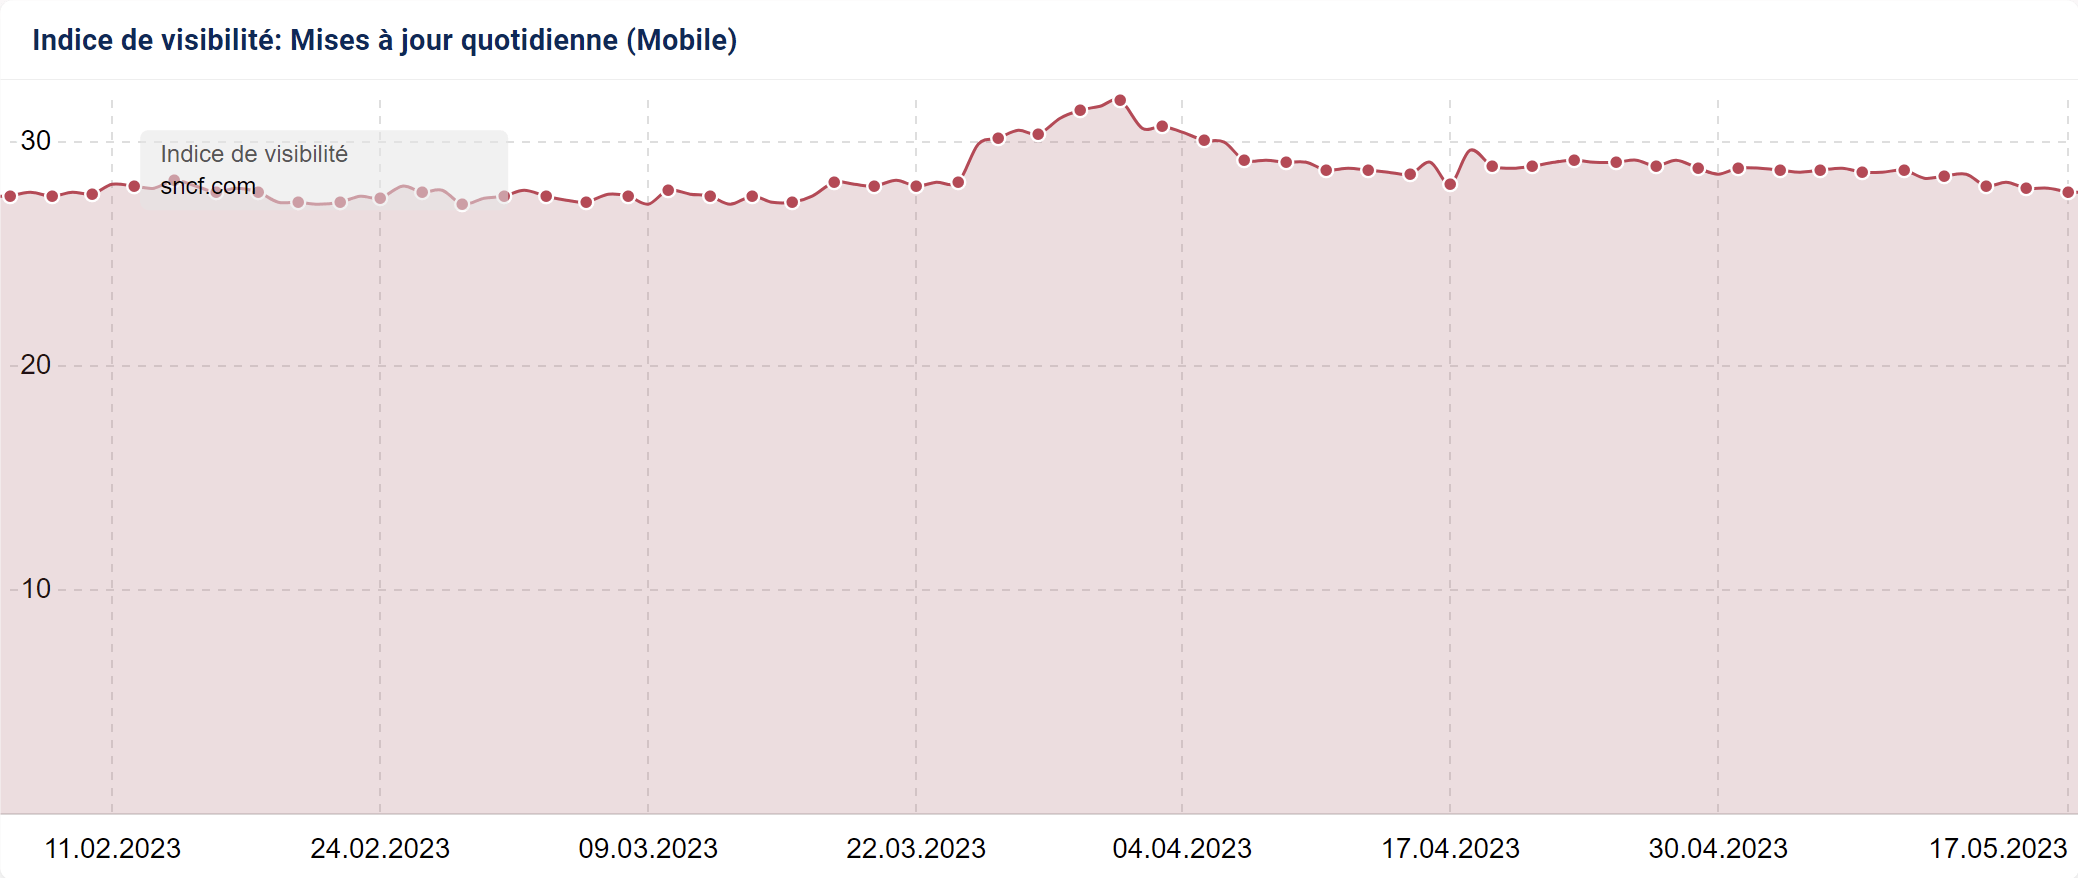 Au cours des 90 derniers jours, le domaine sncf.com a connu des tendances à la hausse et à la baisse.  Fin mars, la Visibilité est remontée.